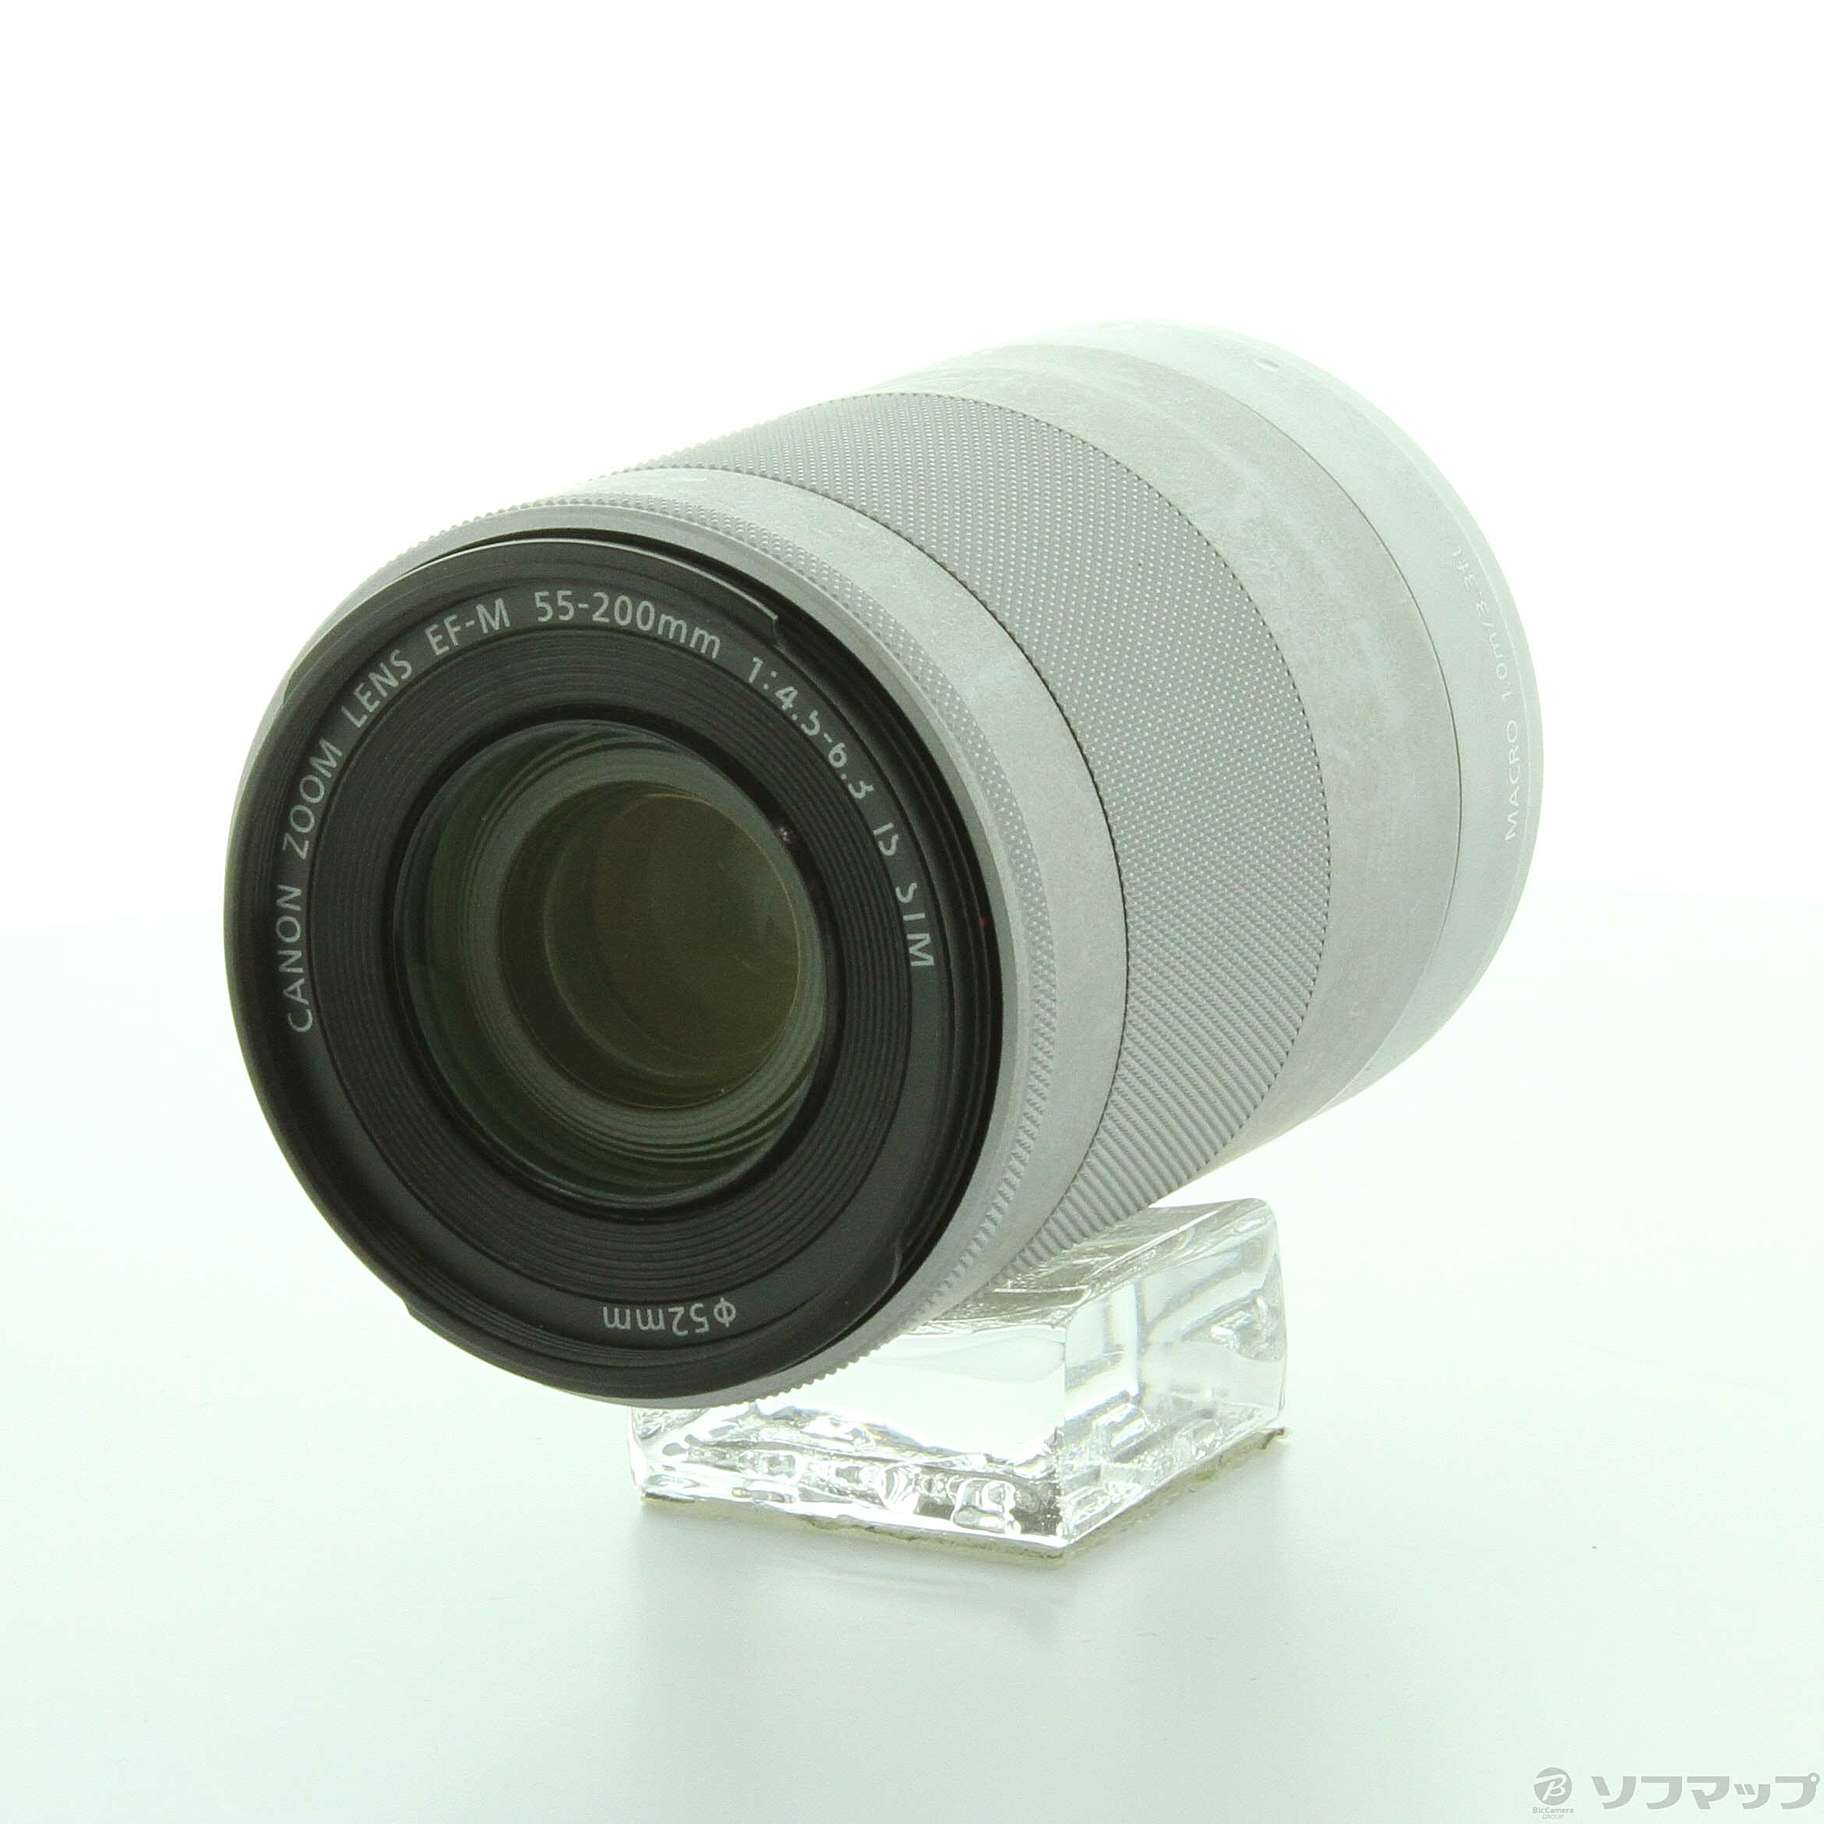 Canon EF-M55-200mm 望遠レンズ シルバーレンズ(ズーム) - レンズ(ズーム)